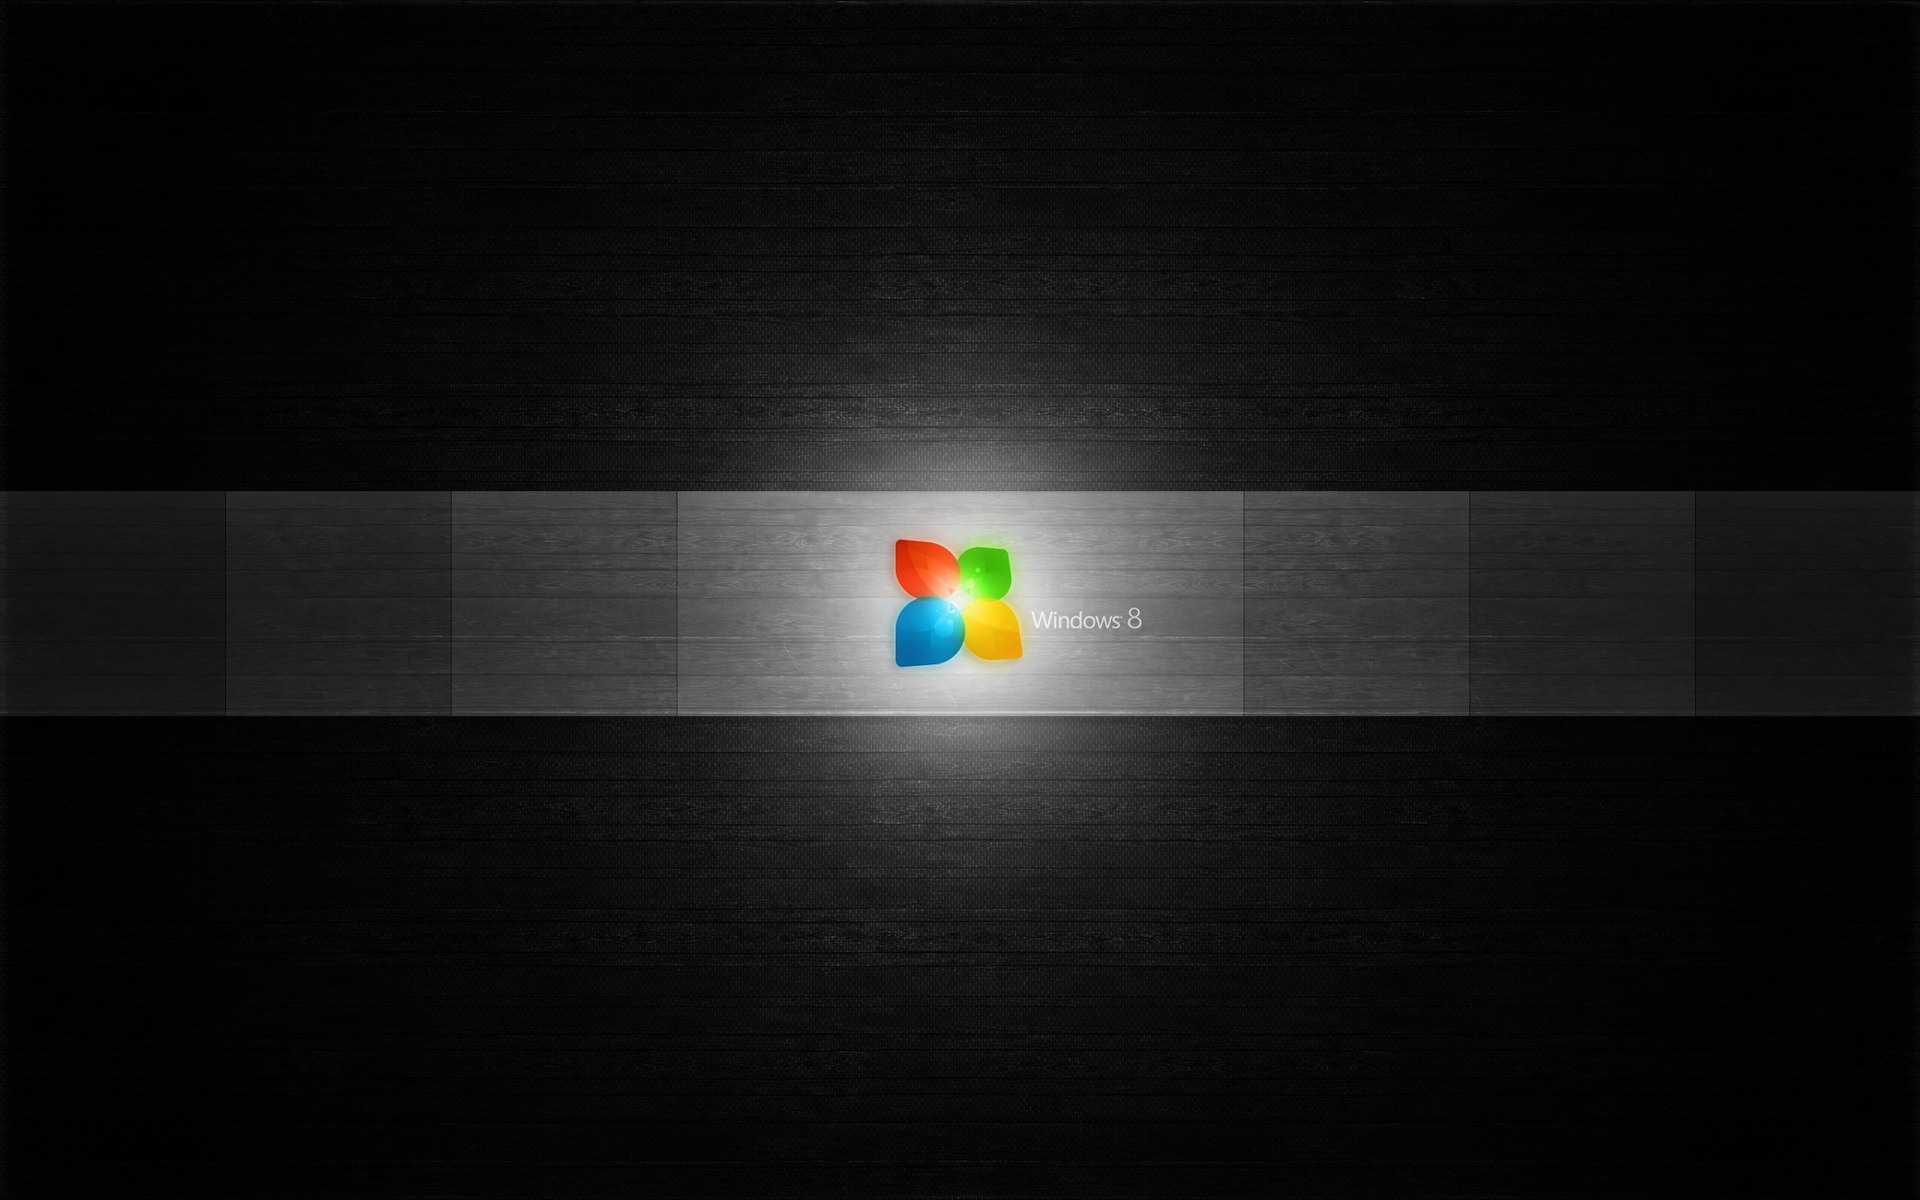 Windows 8 theme wallpaper (1) #7 - 1920x1200